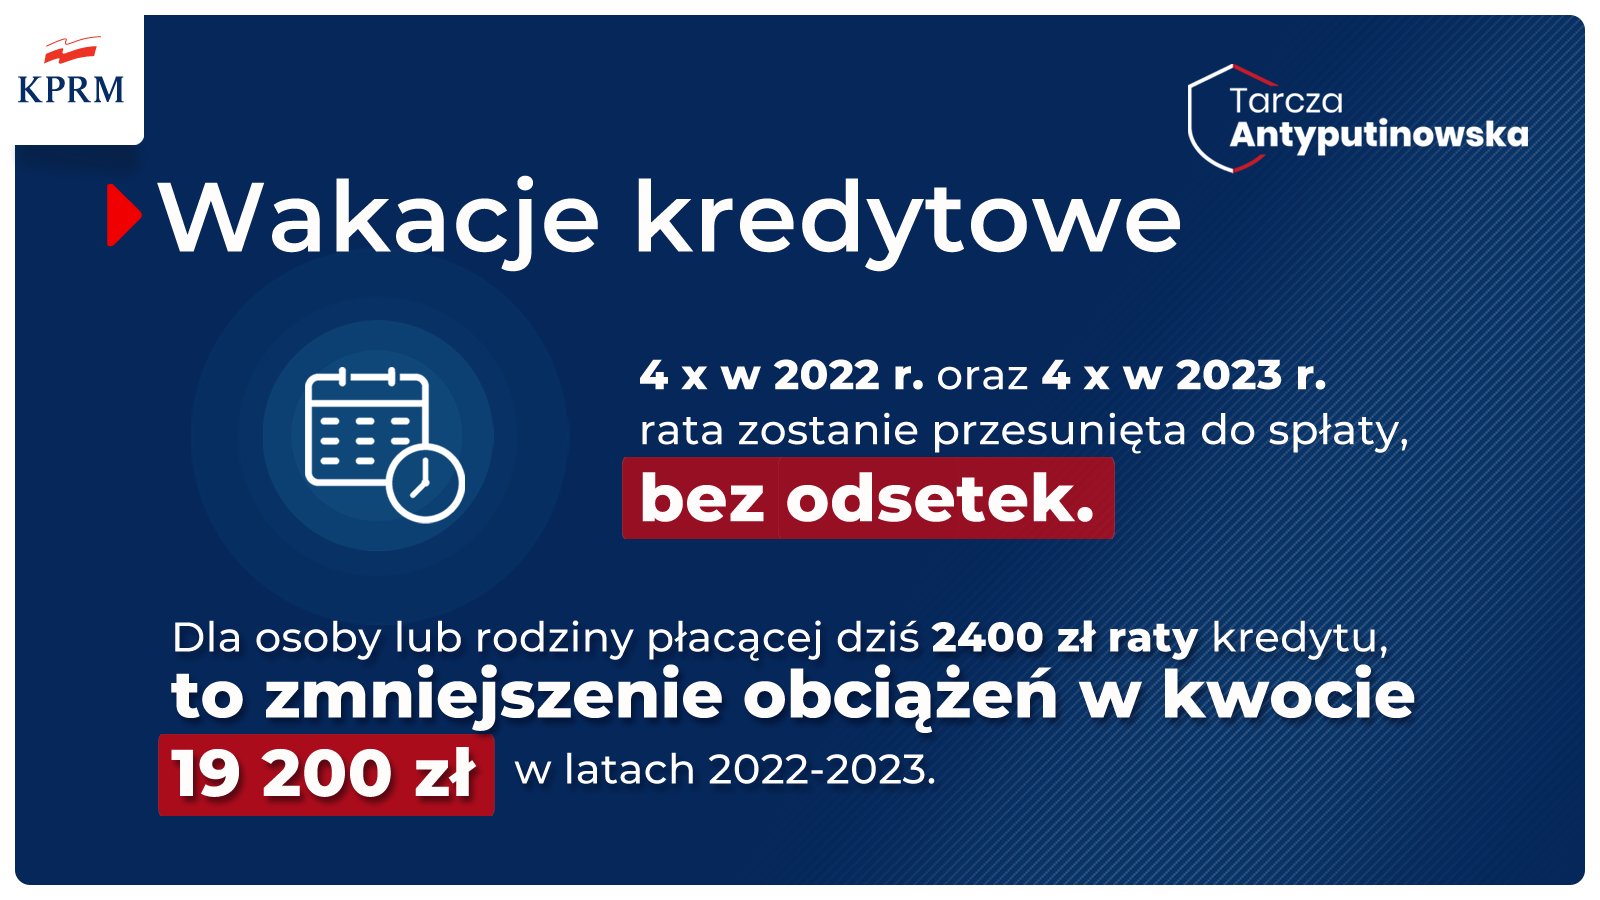 PKO BP 20 kredytobiorców złożyło wnioski o wakacje kredytowe Infor.pl